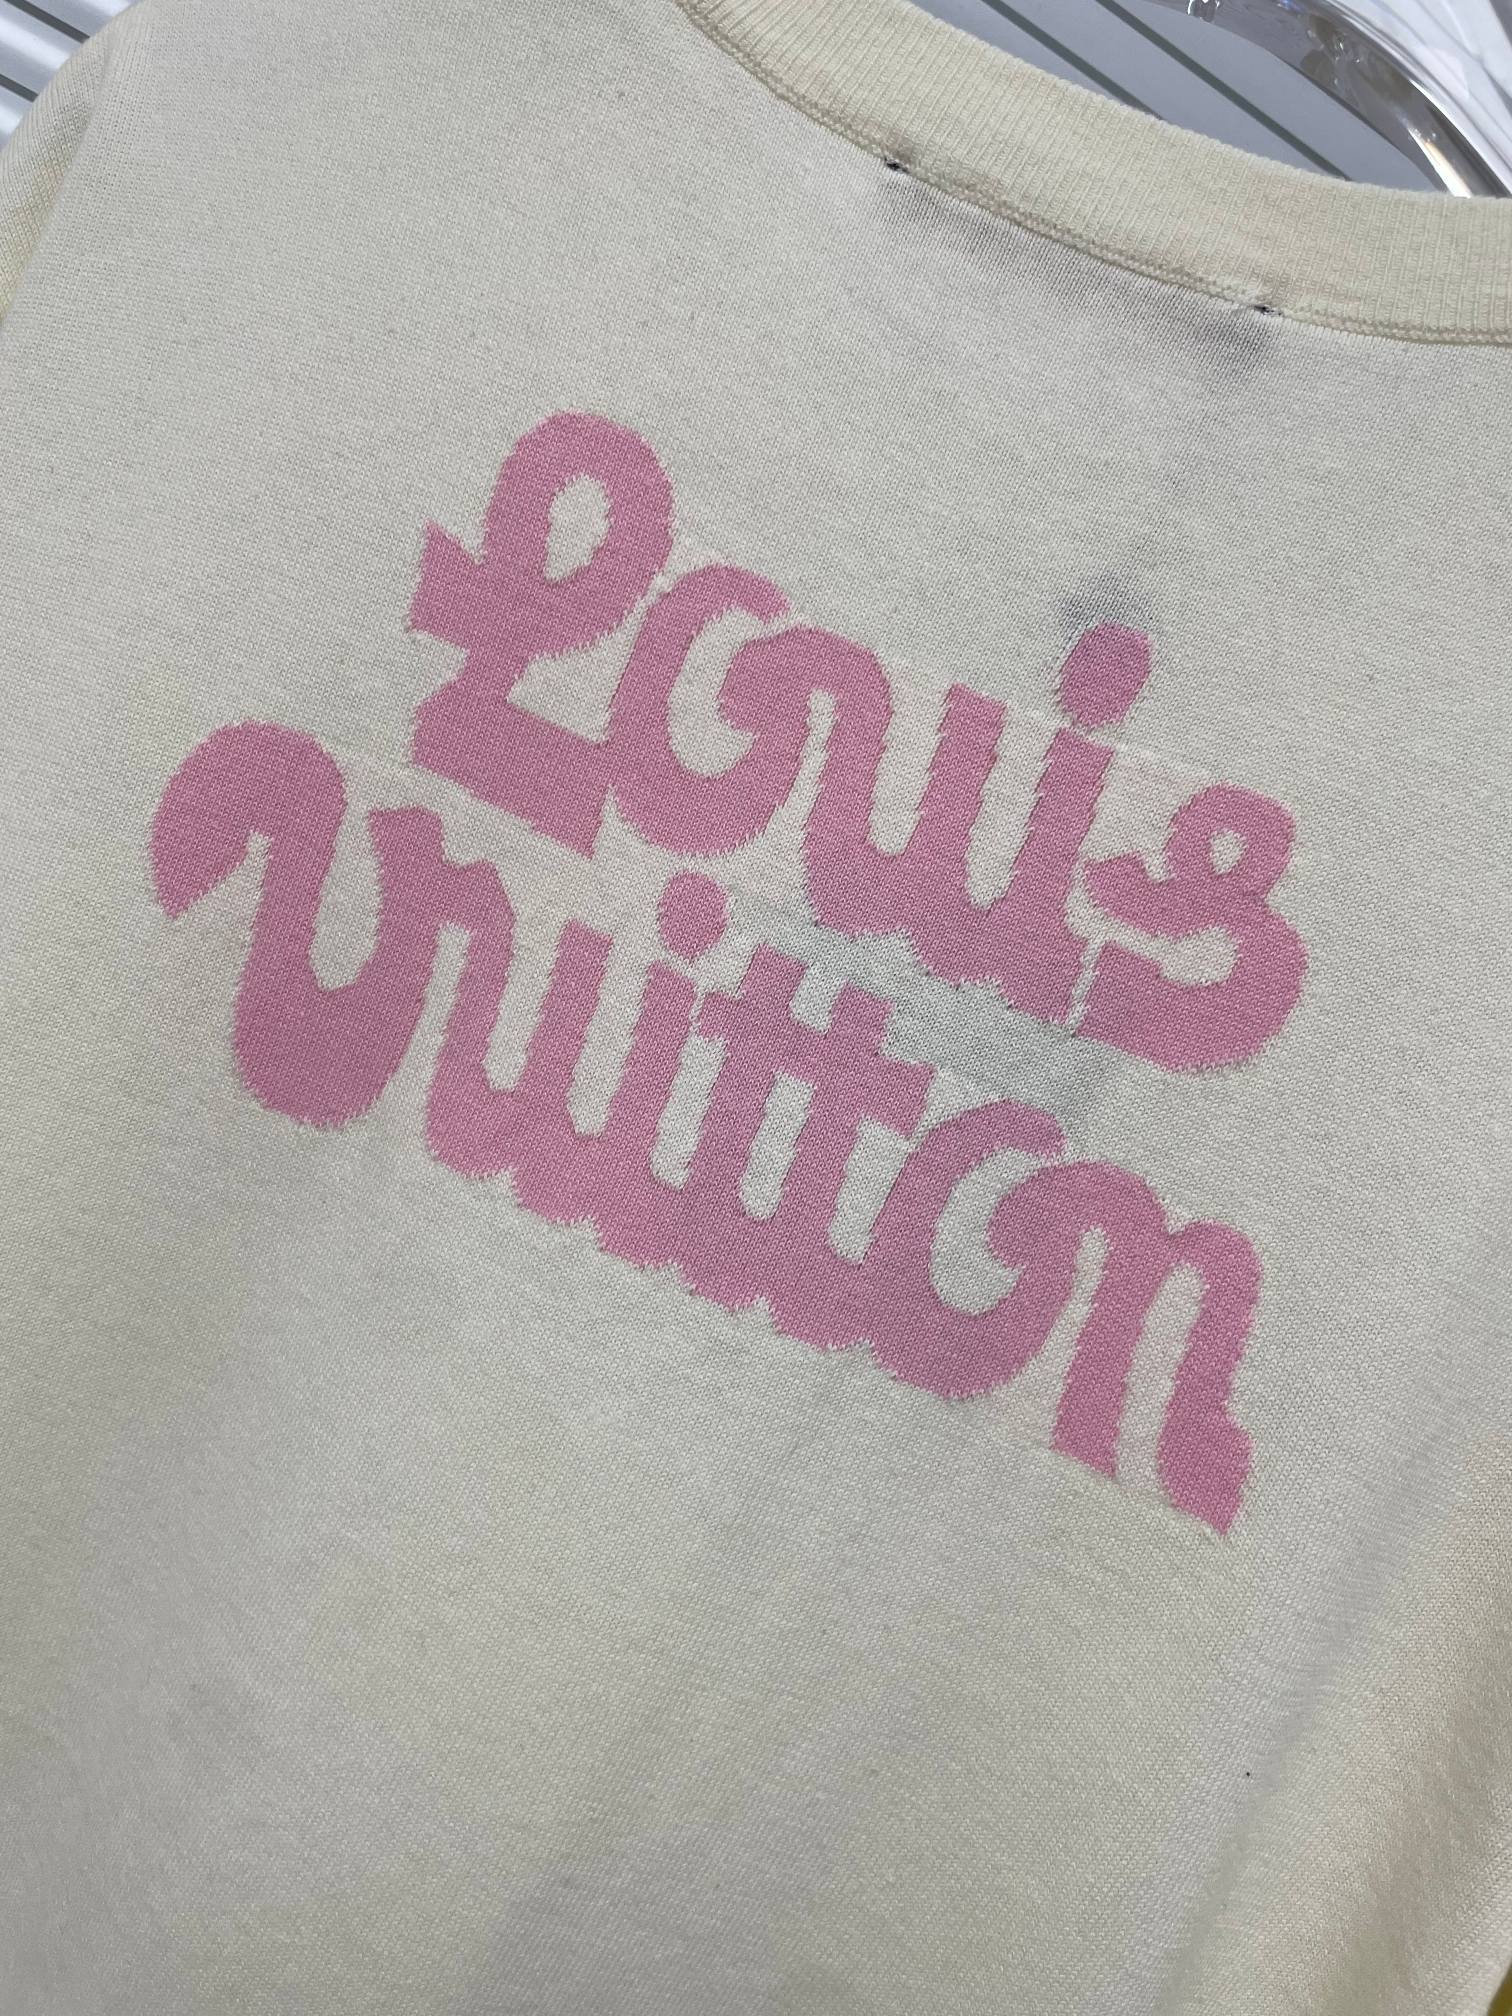 LouisVuitton*路易威登卡通标识logoT恤*宽松版型采用280克纯棉面料成衣普洗上身舒适ov